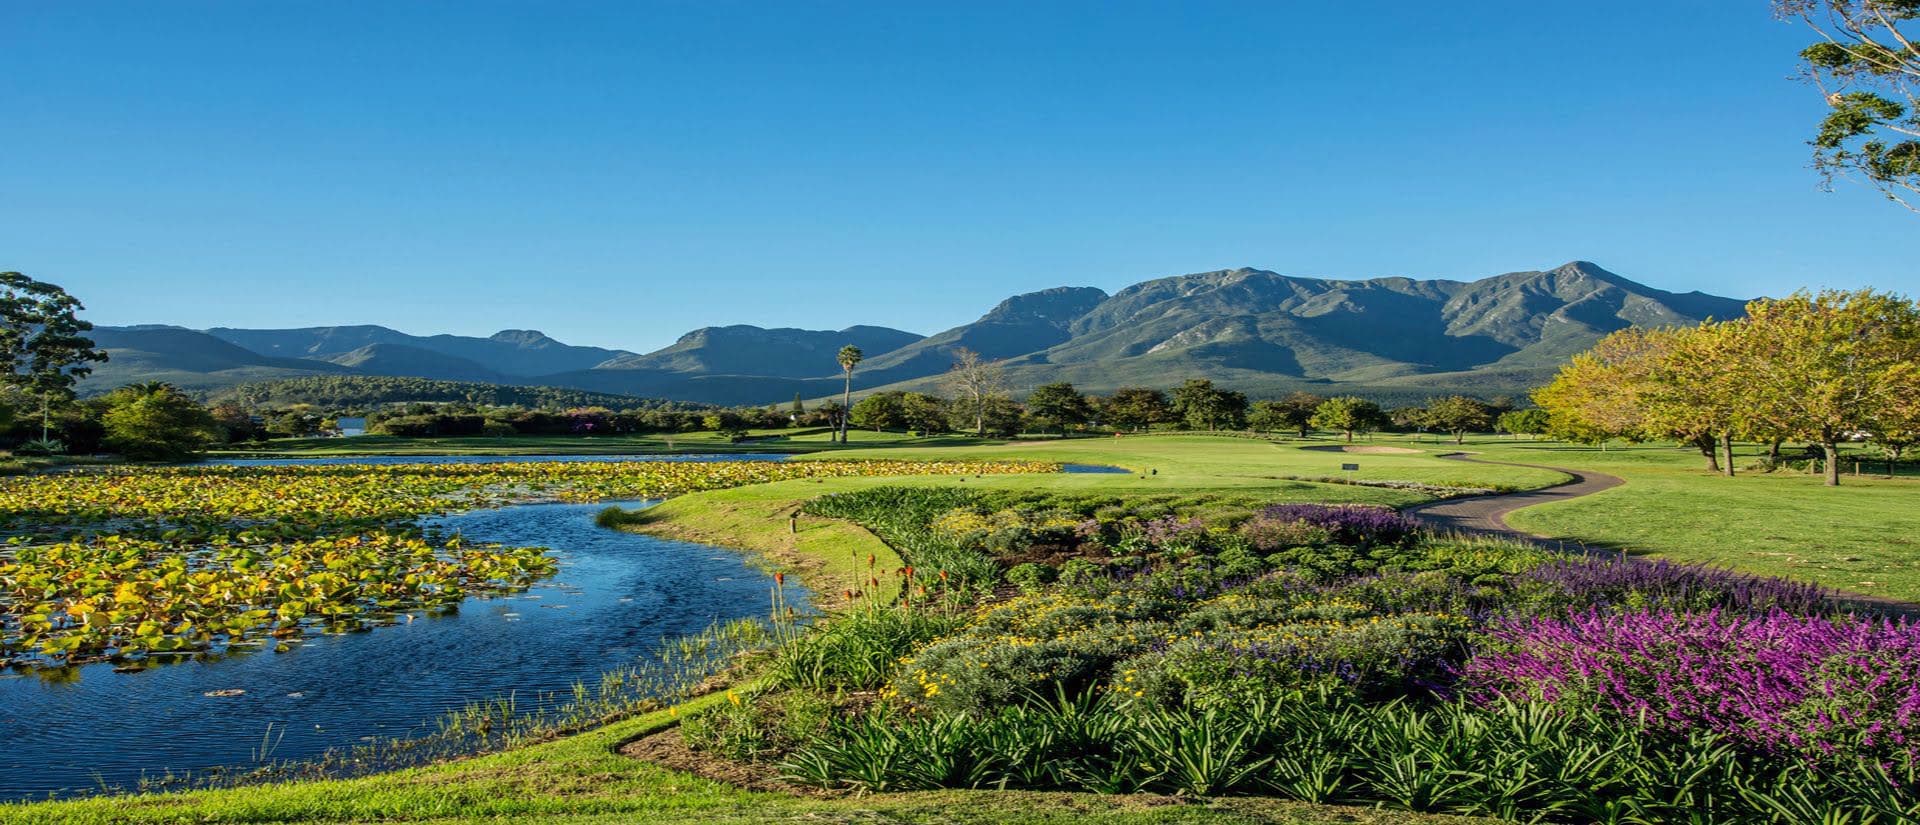 Vacanze esclusive all'insegna del golf in Sud Africa